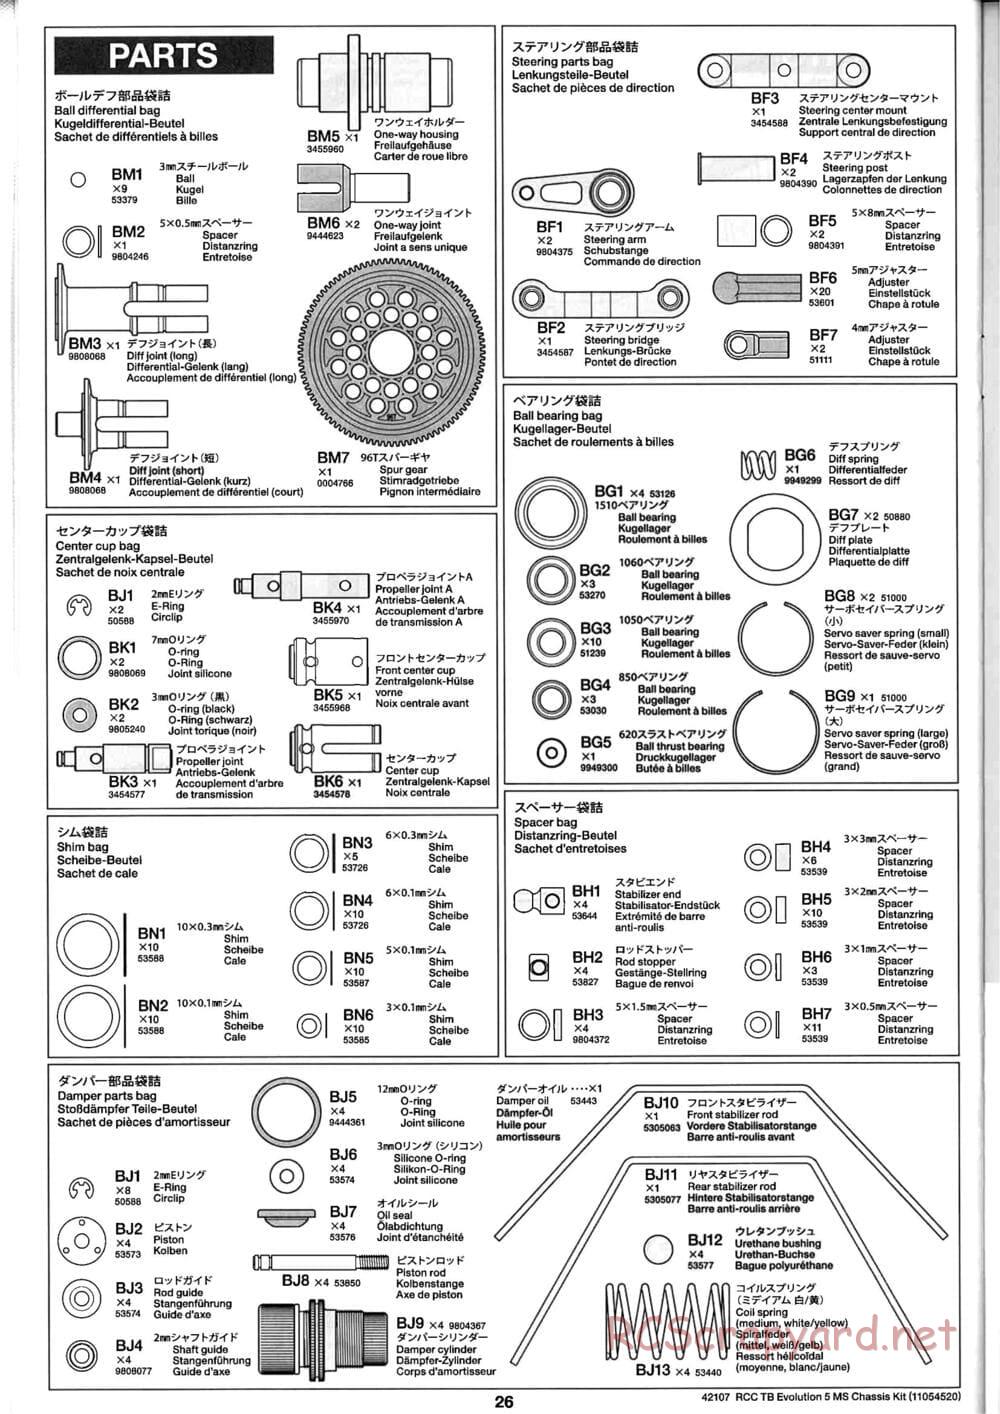 Tamiya - TB Evolution 5 MS Chassis - Manual - Page 26